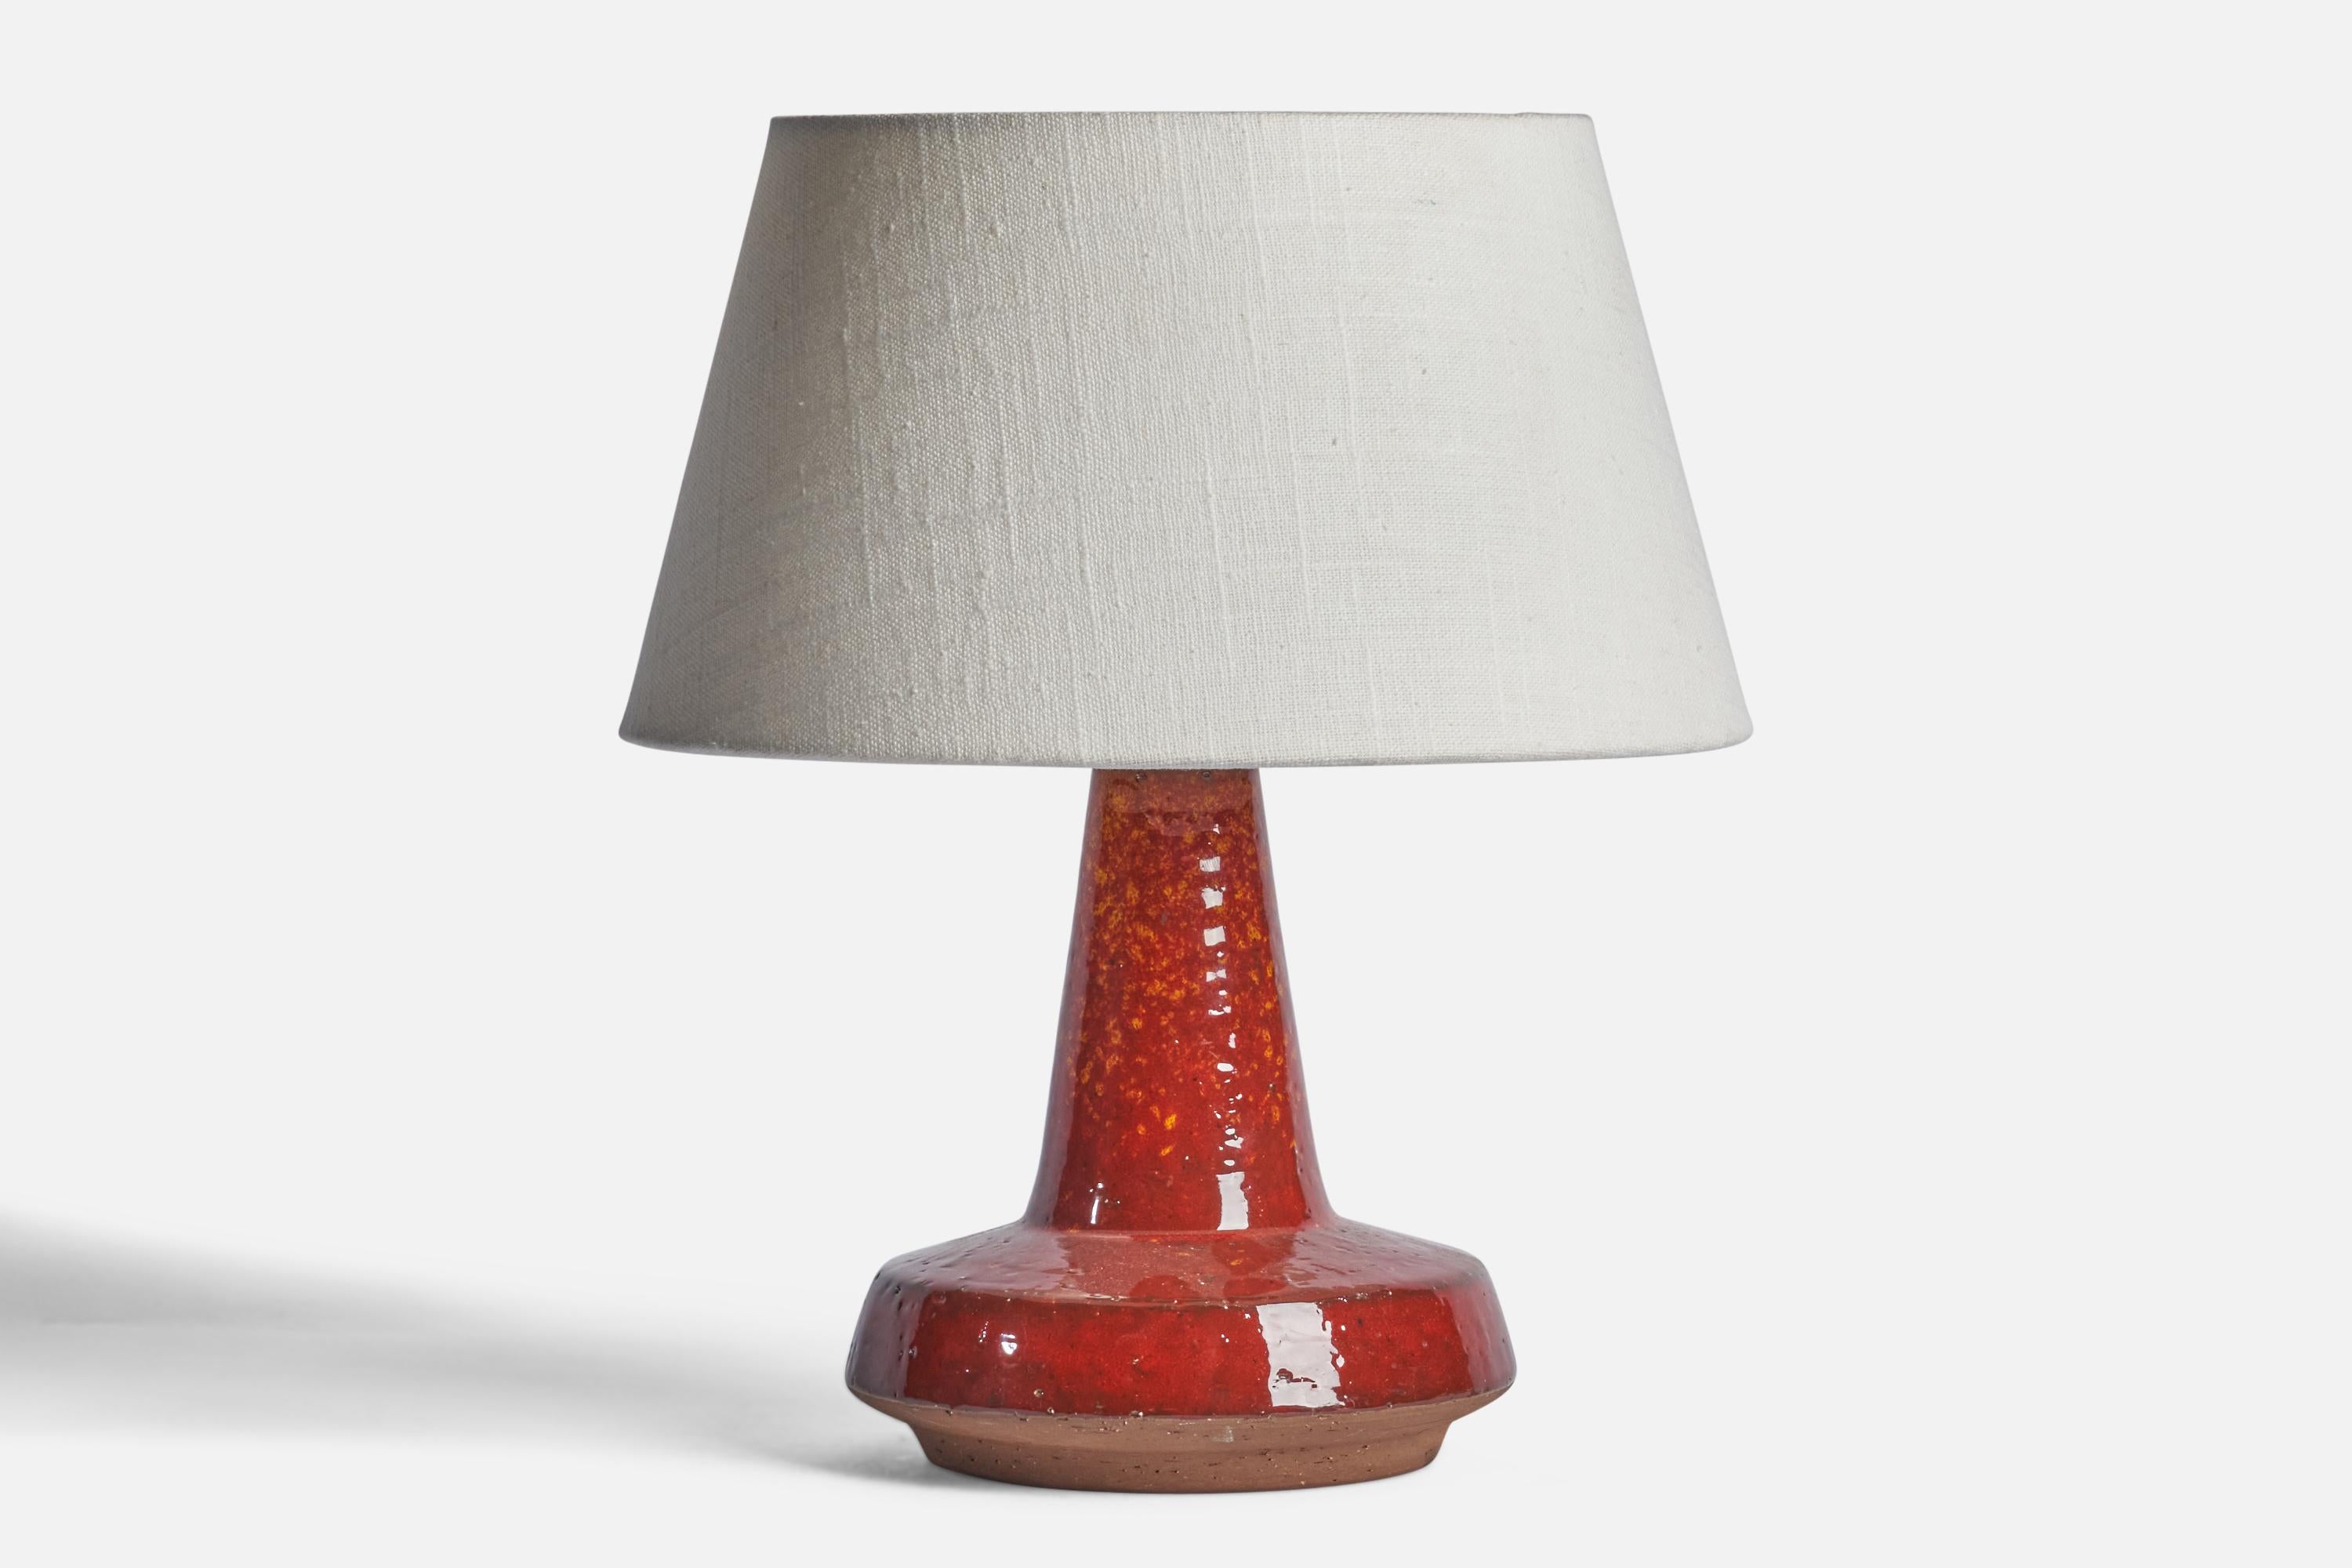 
Lampe de table en grès émaillé rouge conçue et produite par Michael Andersen, Bornholm, Danemark, C.C. 1960.
Dimensions de la lampe (pouces) : 9